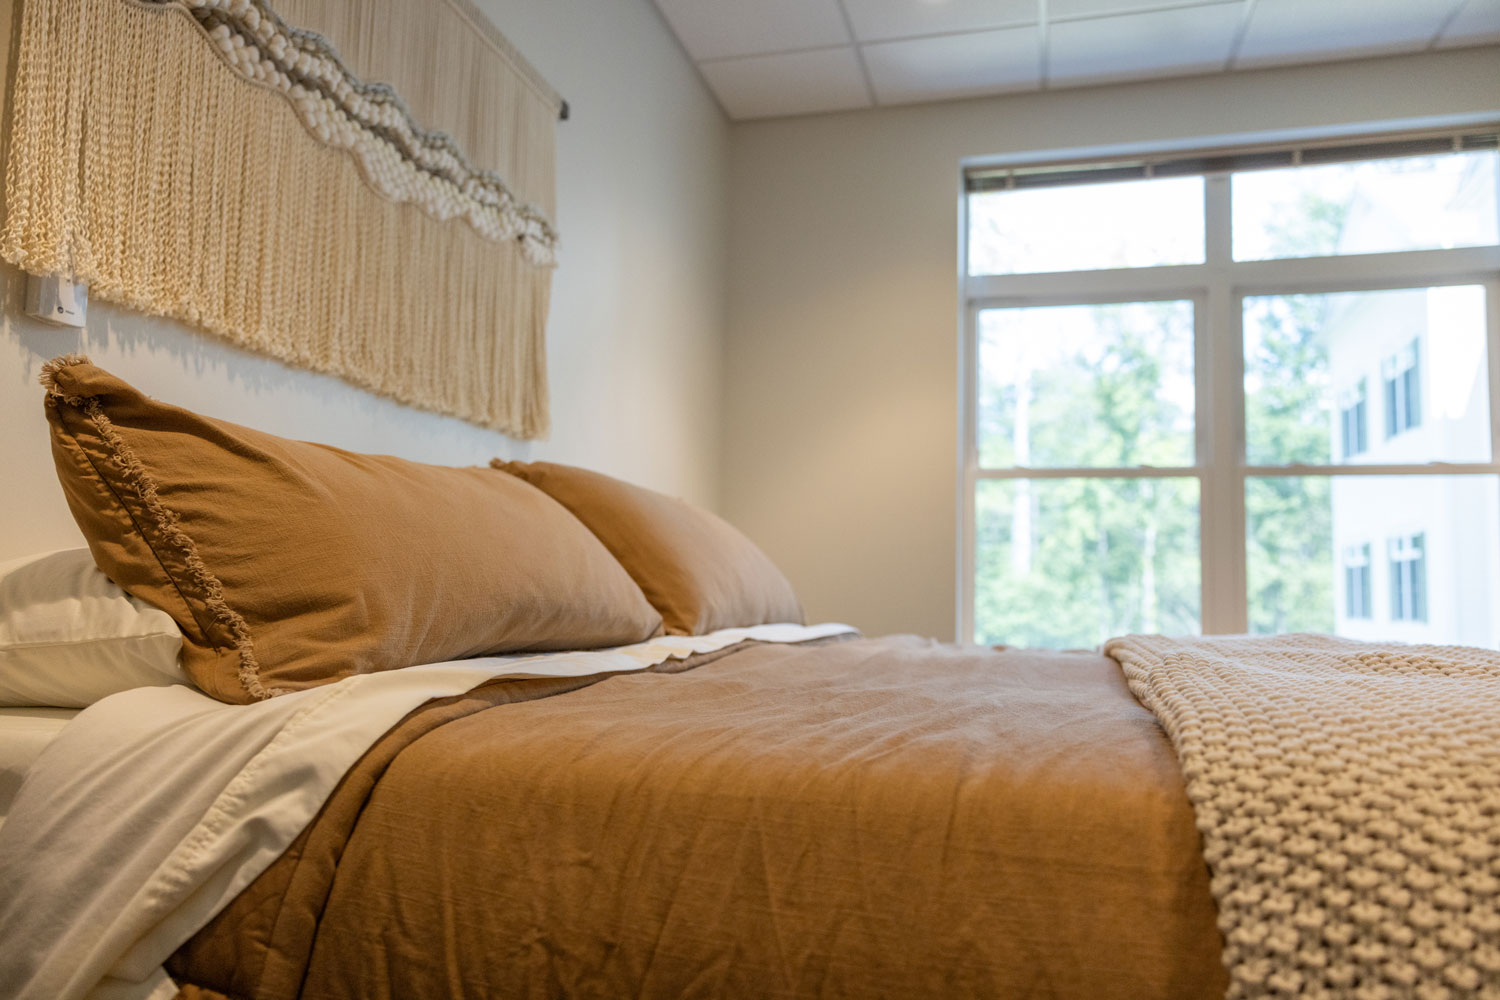 Alpas Wellness Patient Bedroom design-driven space